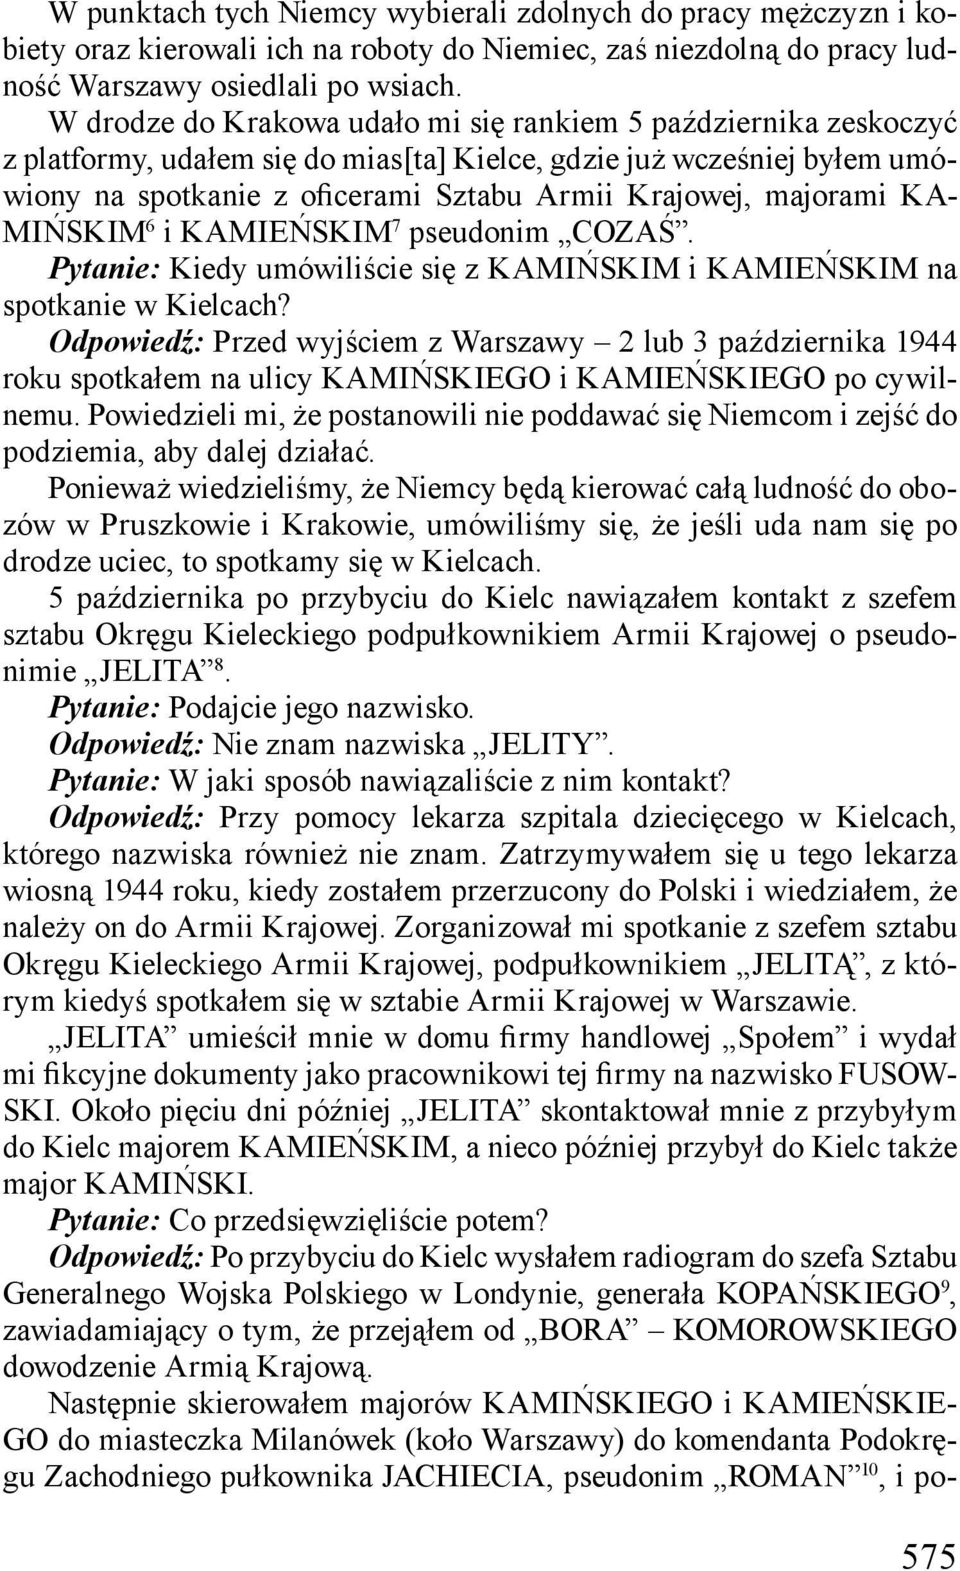 majorami KA- MIŃSKIM 6 i KAMIEŃSKIM 7 pseudonim COZAŚ. Pytanie: Kiedy umówiliście się z KAMIŃSKIM i KAMIEŃSKIM na spotkanie w Kielcach?